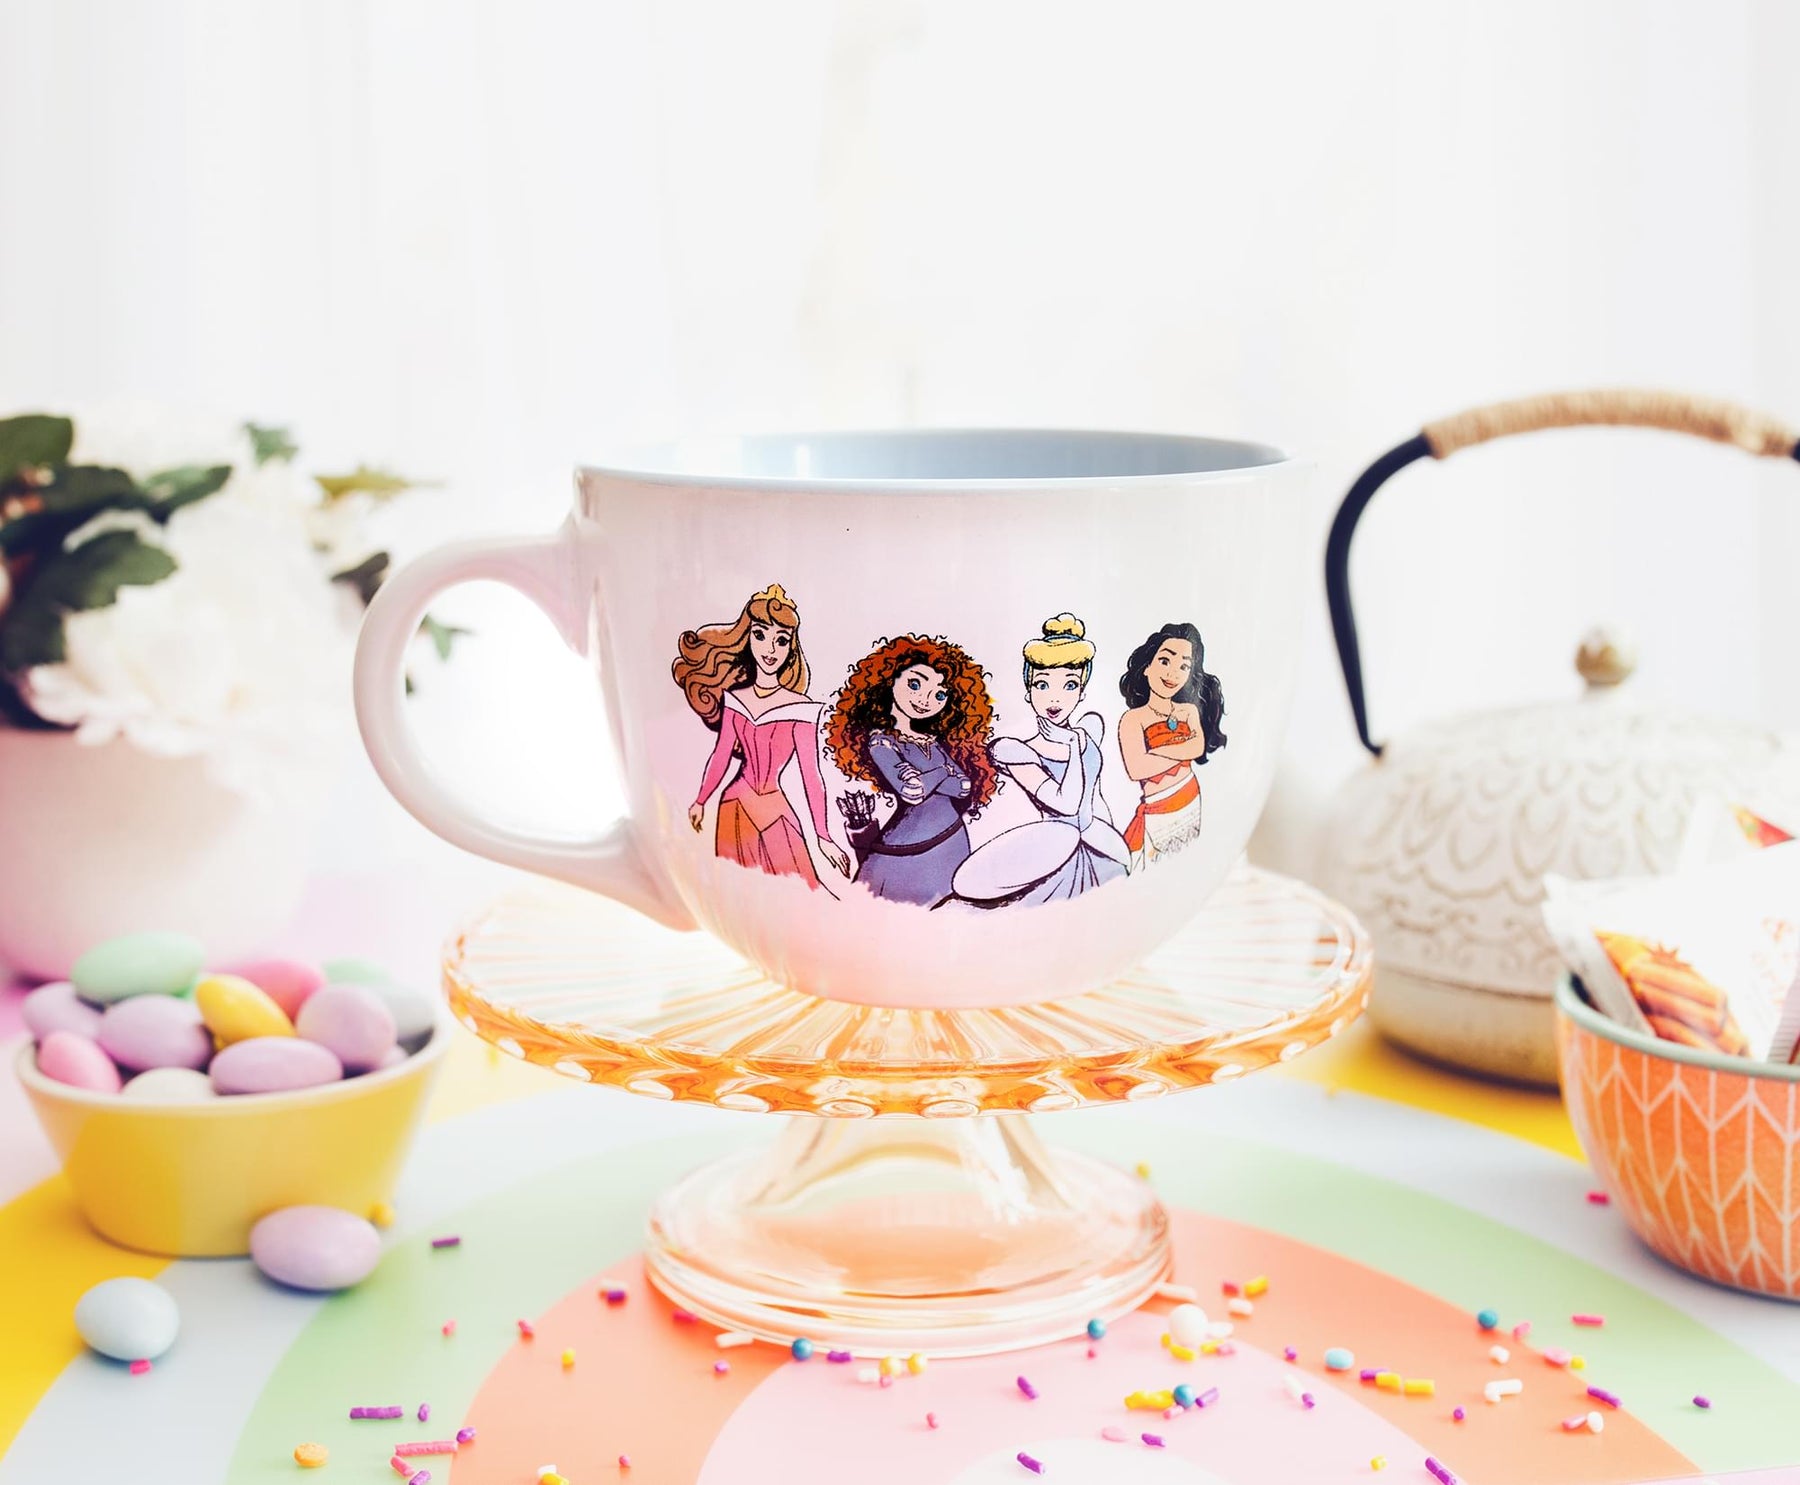 Disney Princess "Courage To Be Kind" Ceramic Soup Mug | Holds 24 Ounces